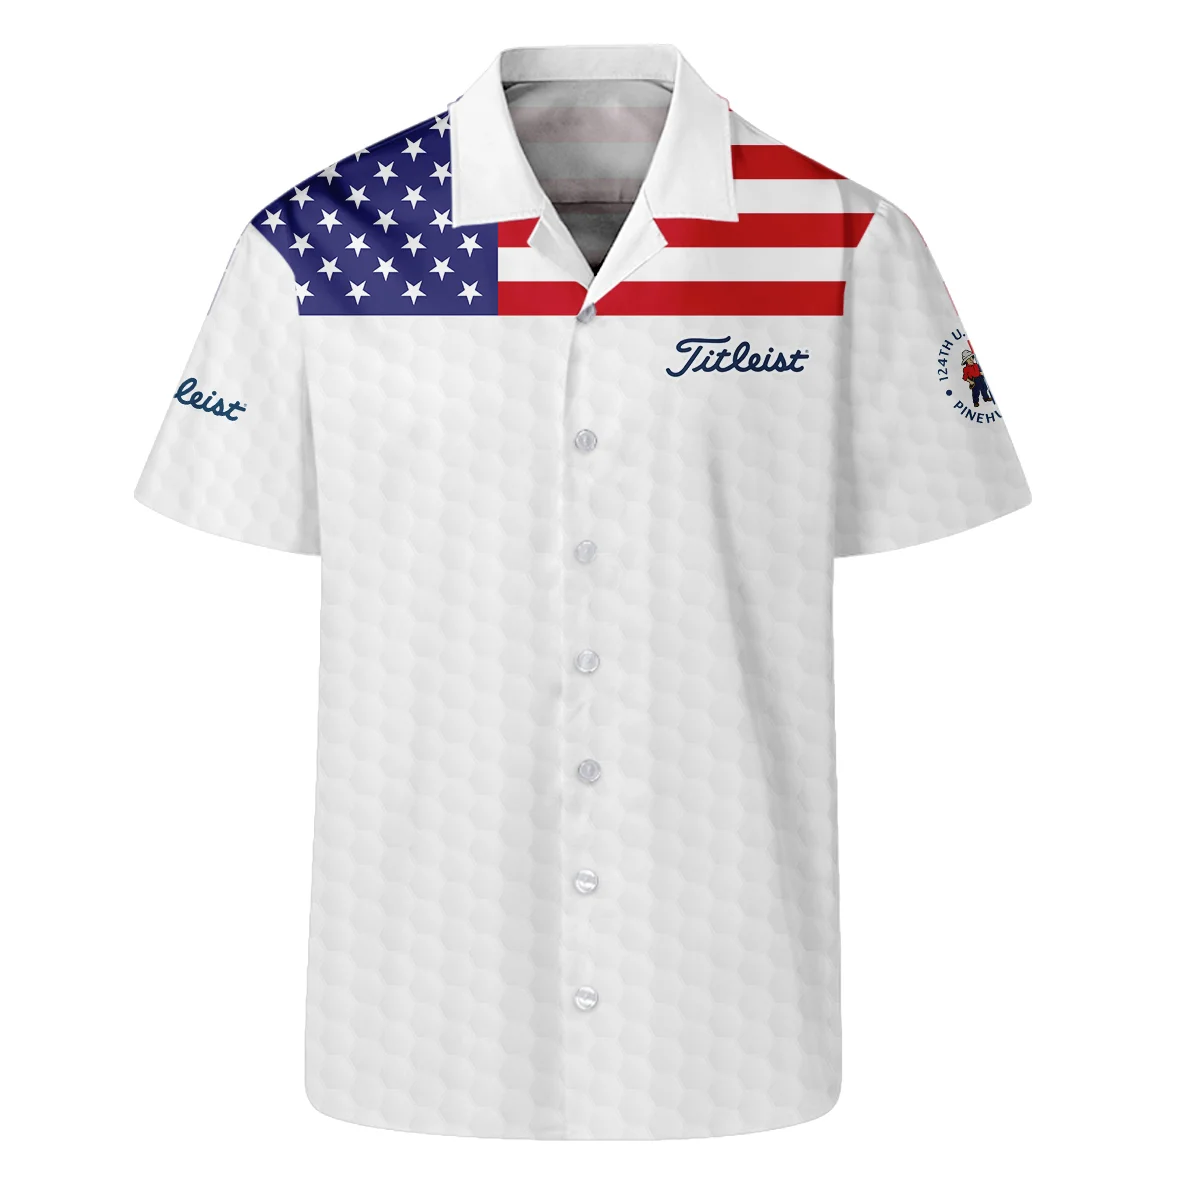 Titleist 124th U.S. Open Pinehurst Hawaiian Shirt USA Flag Golf Pattern All Over Print Oversized Hawaiian Shirt